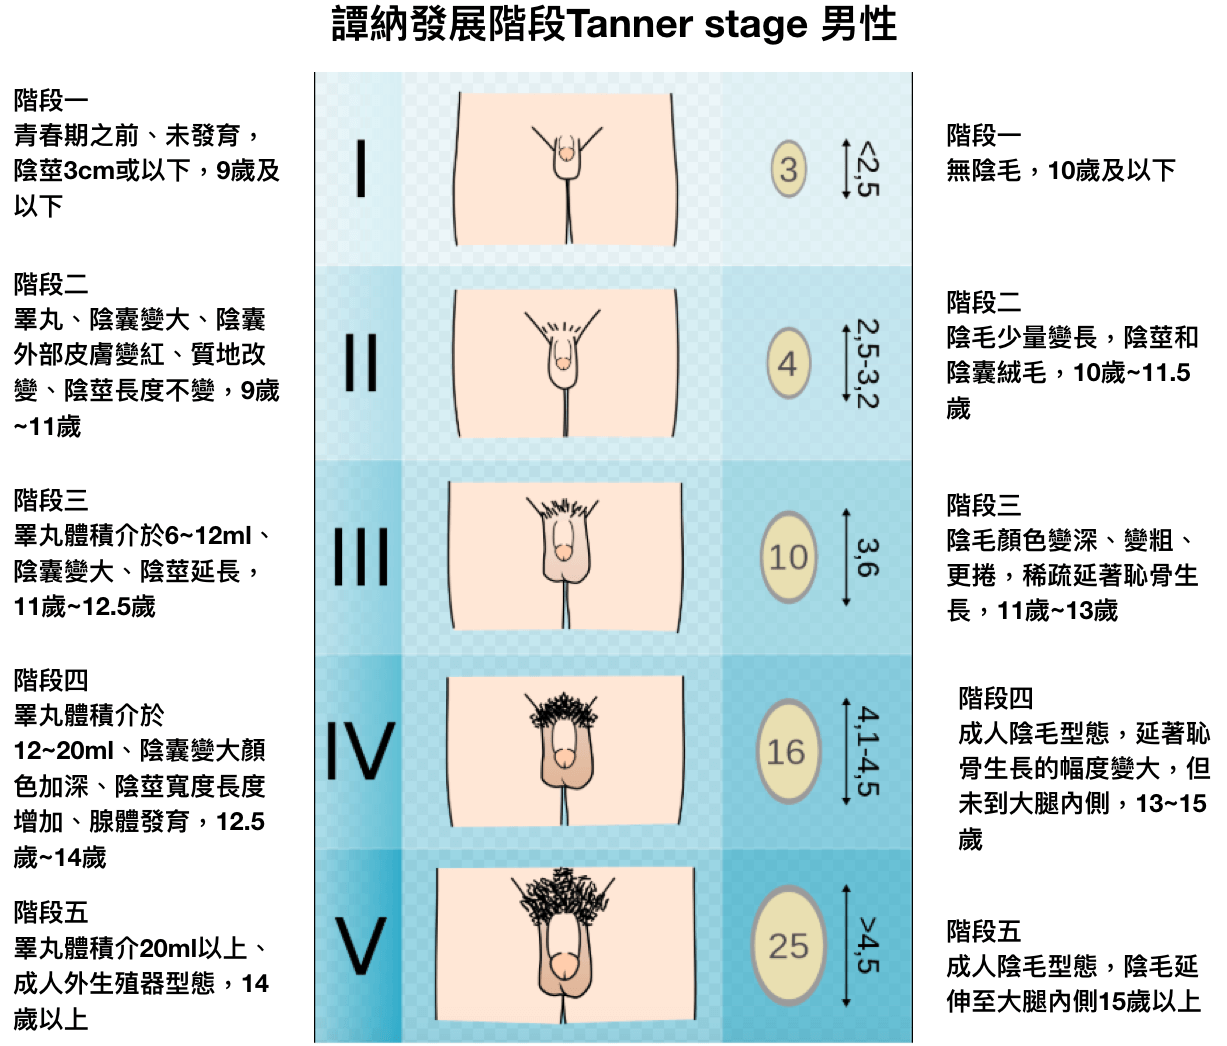 第二性徵發展過程, Tanner stage, 譚納第二性徵發展階段